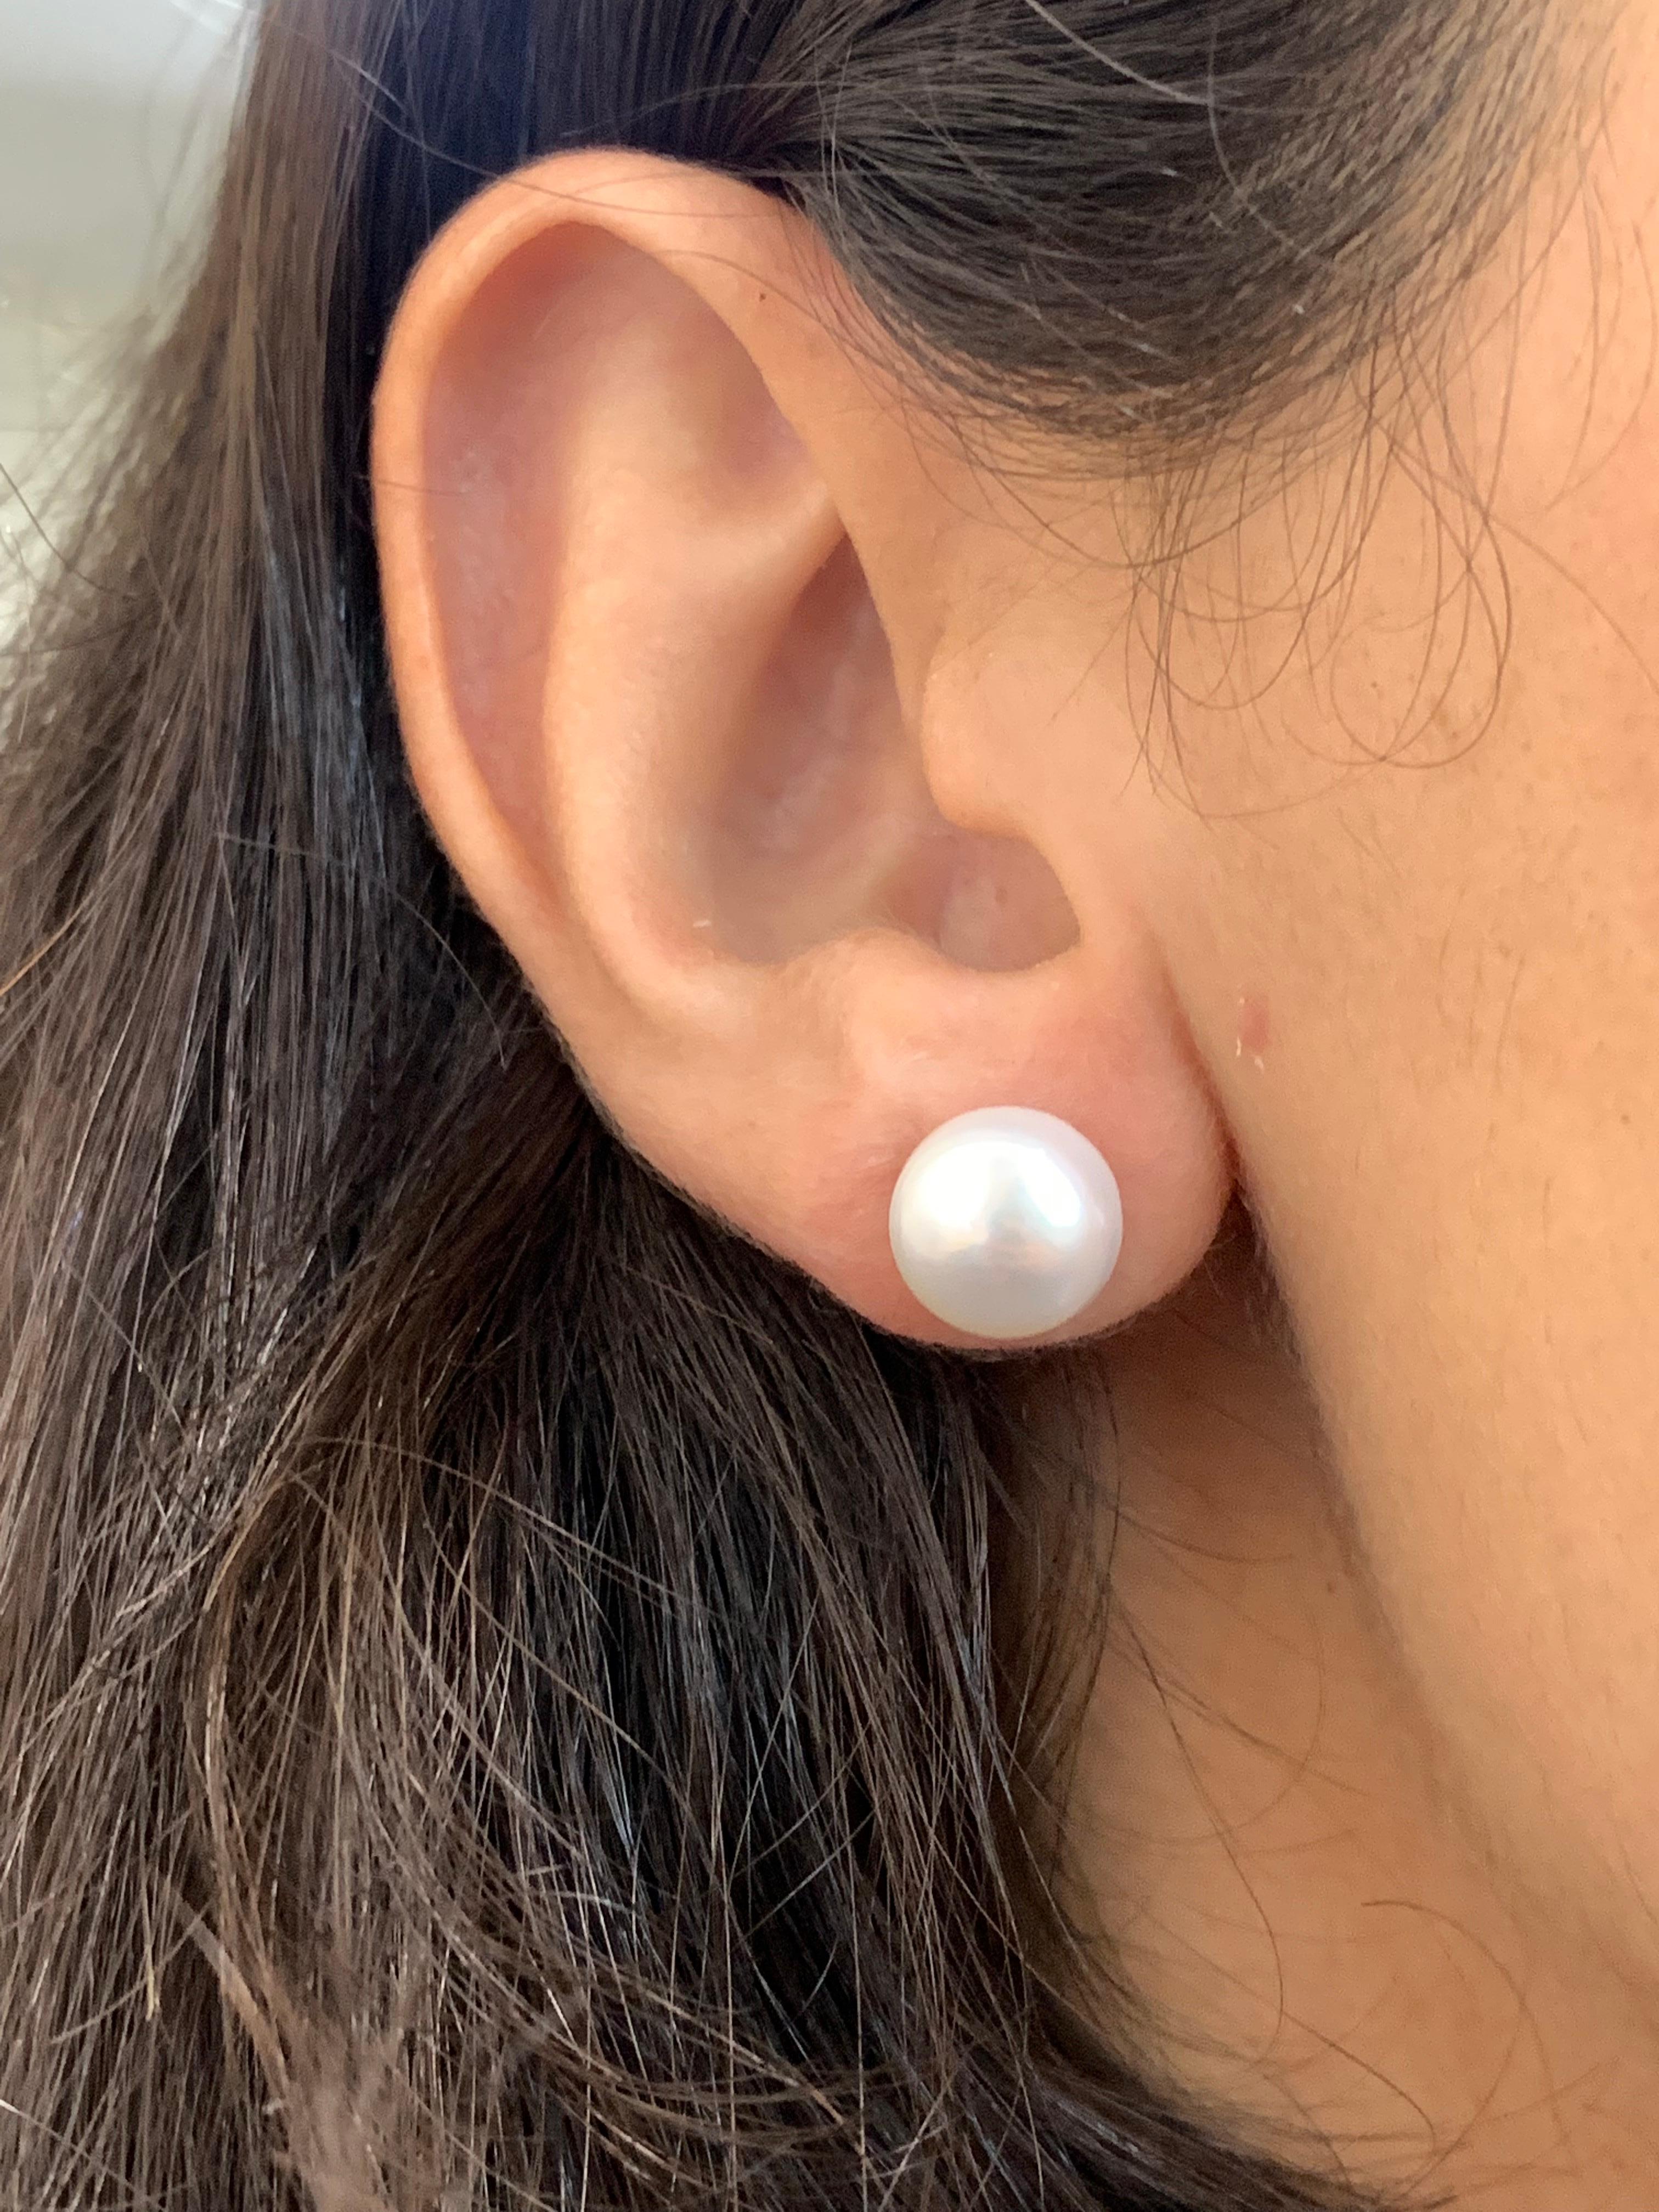 10mm stud earrings on ear